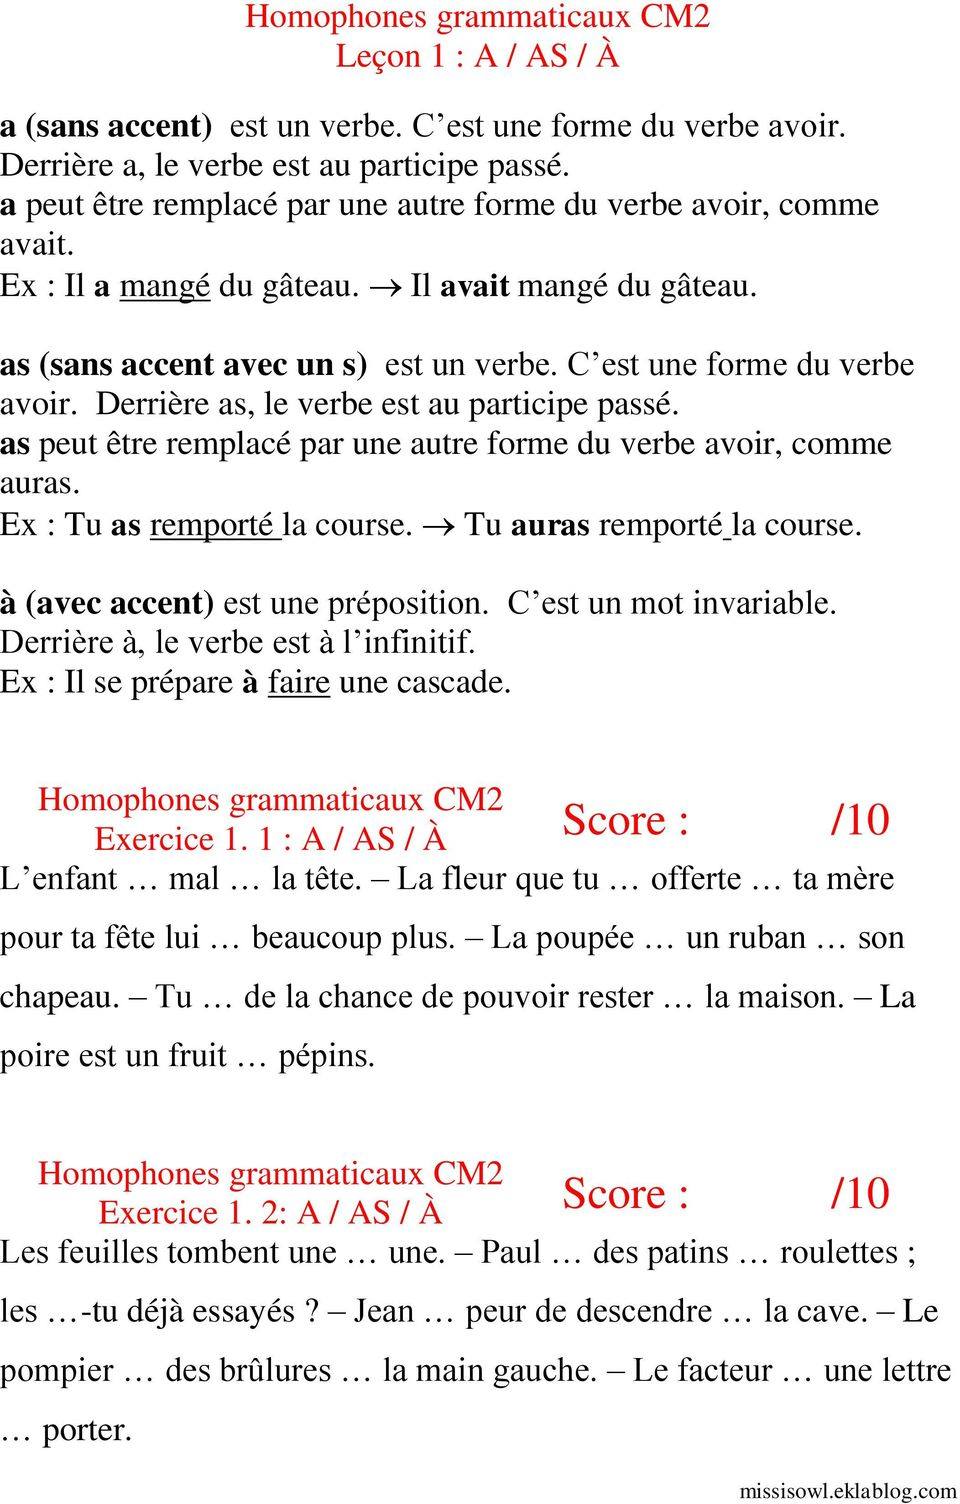 Cm2. Les Homophones Grammaticaux. Exercices - Pdf destiné Exercice Cm2 Gratuit